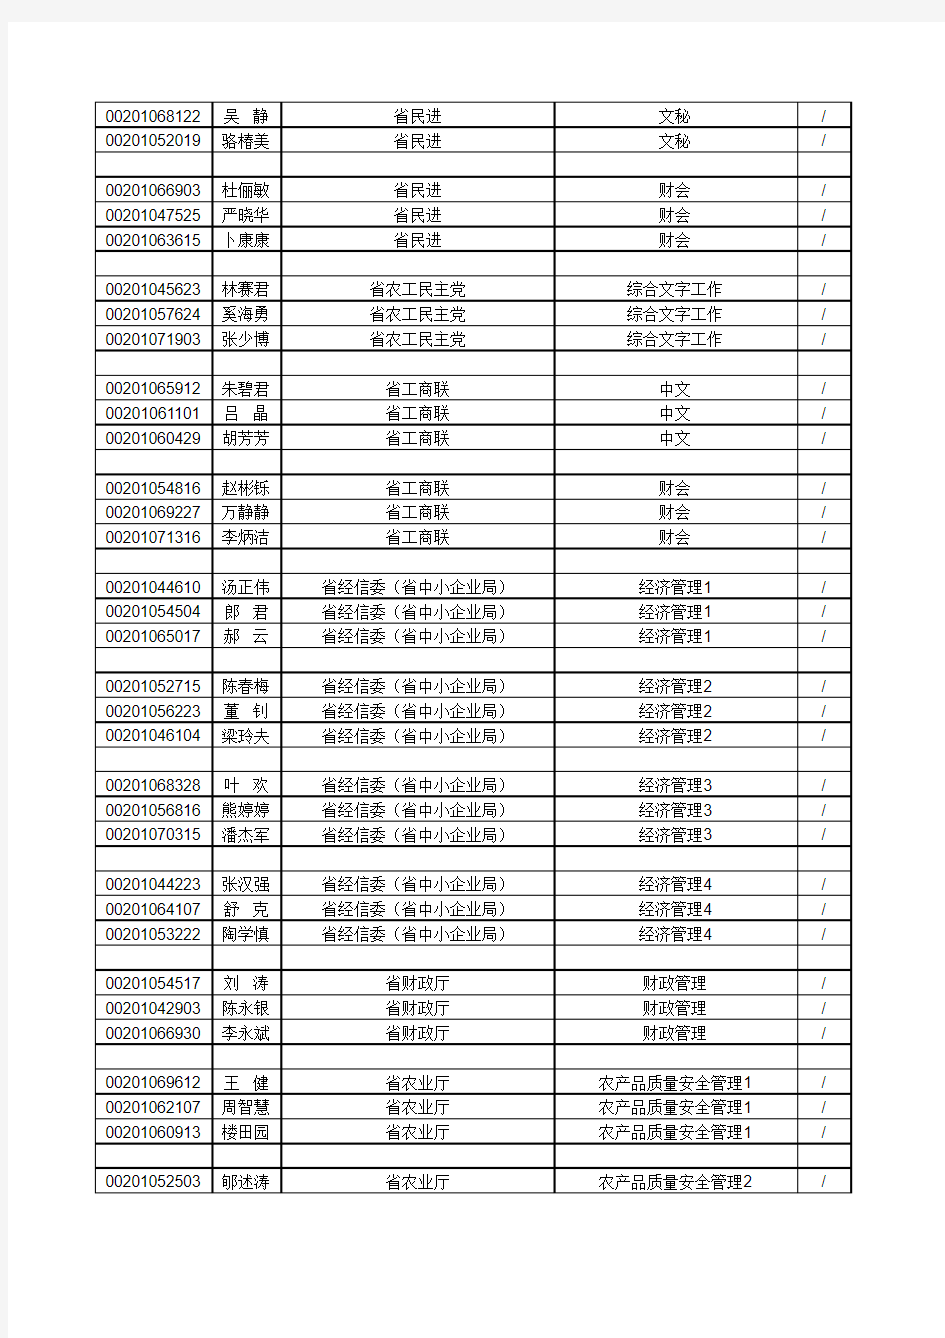 2010年浙江级单位入围人员成绩